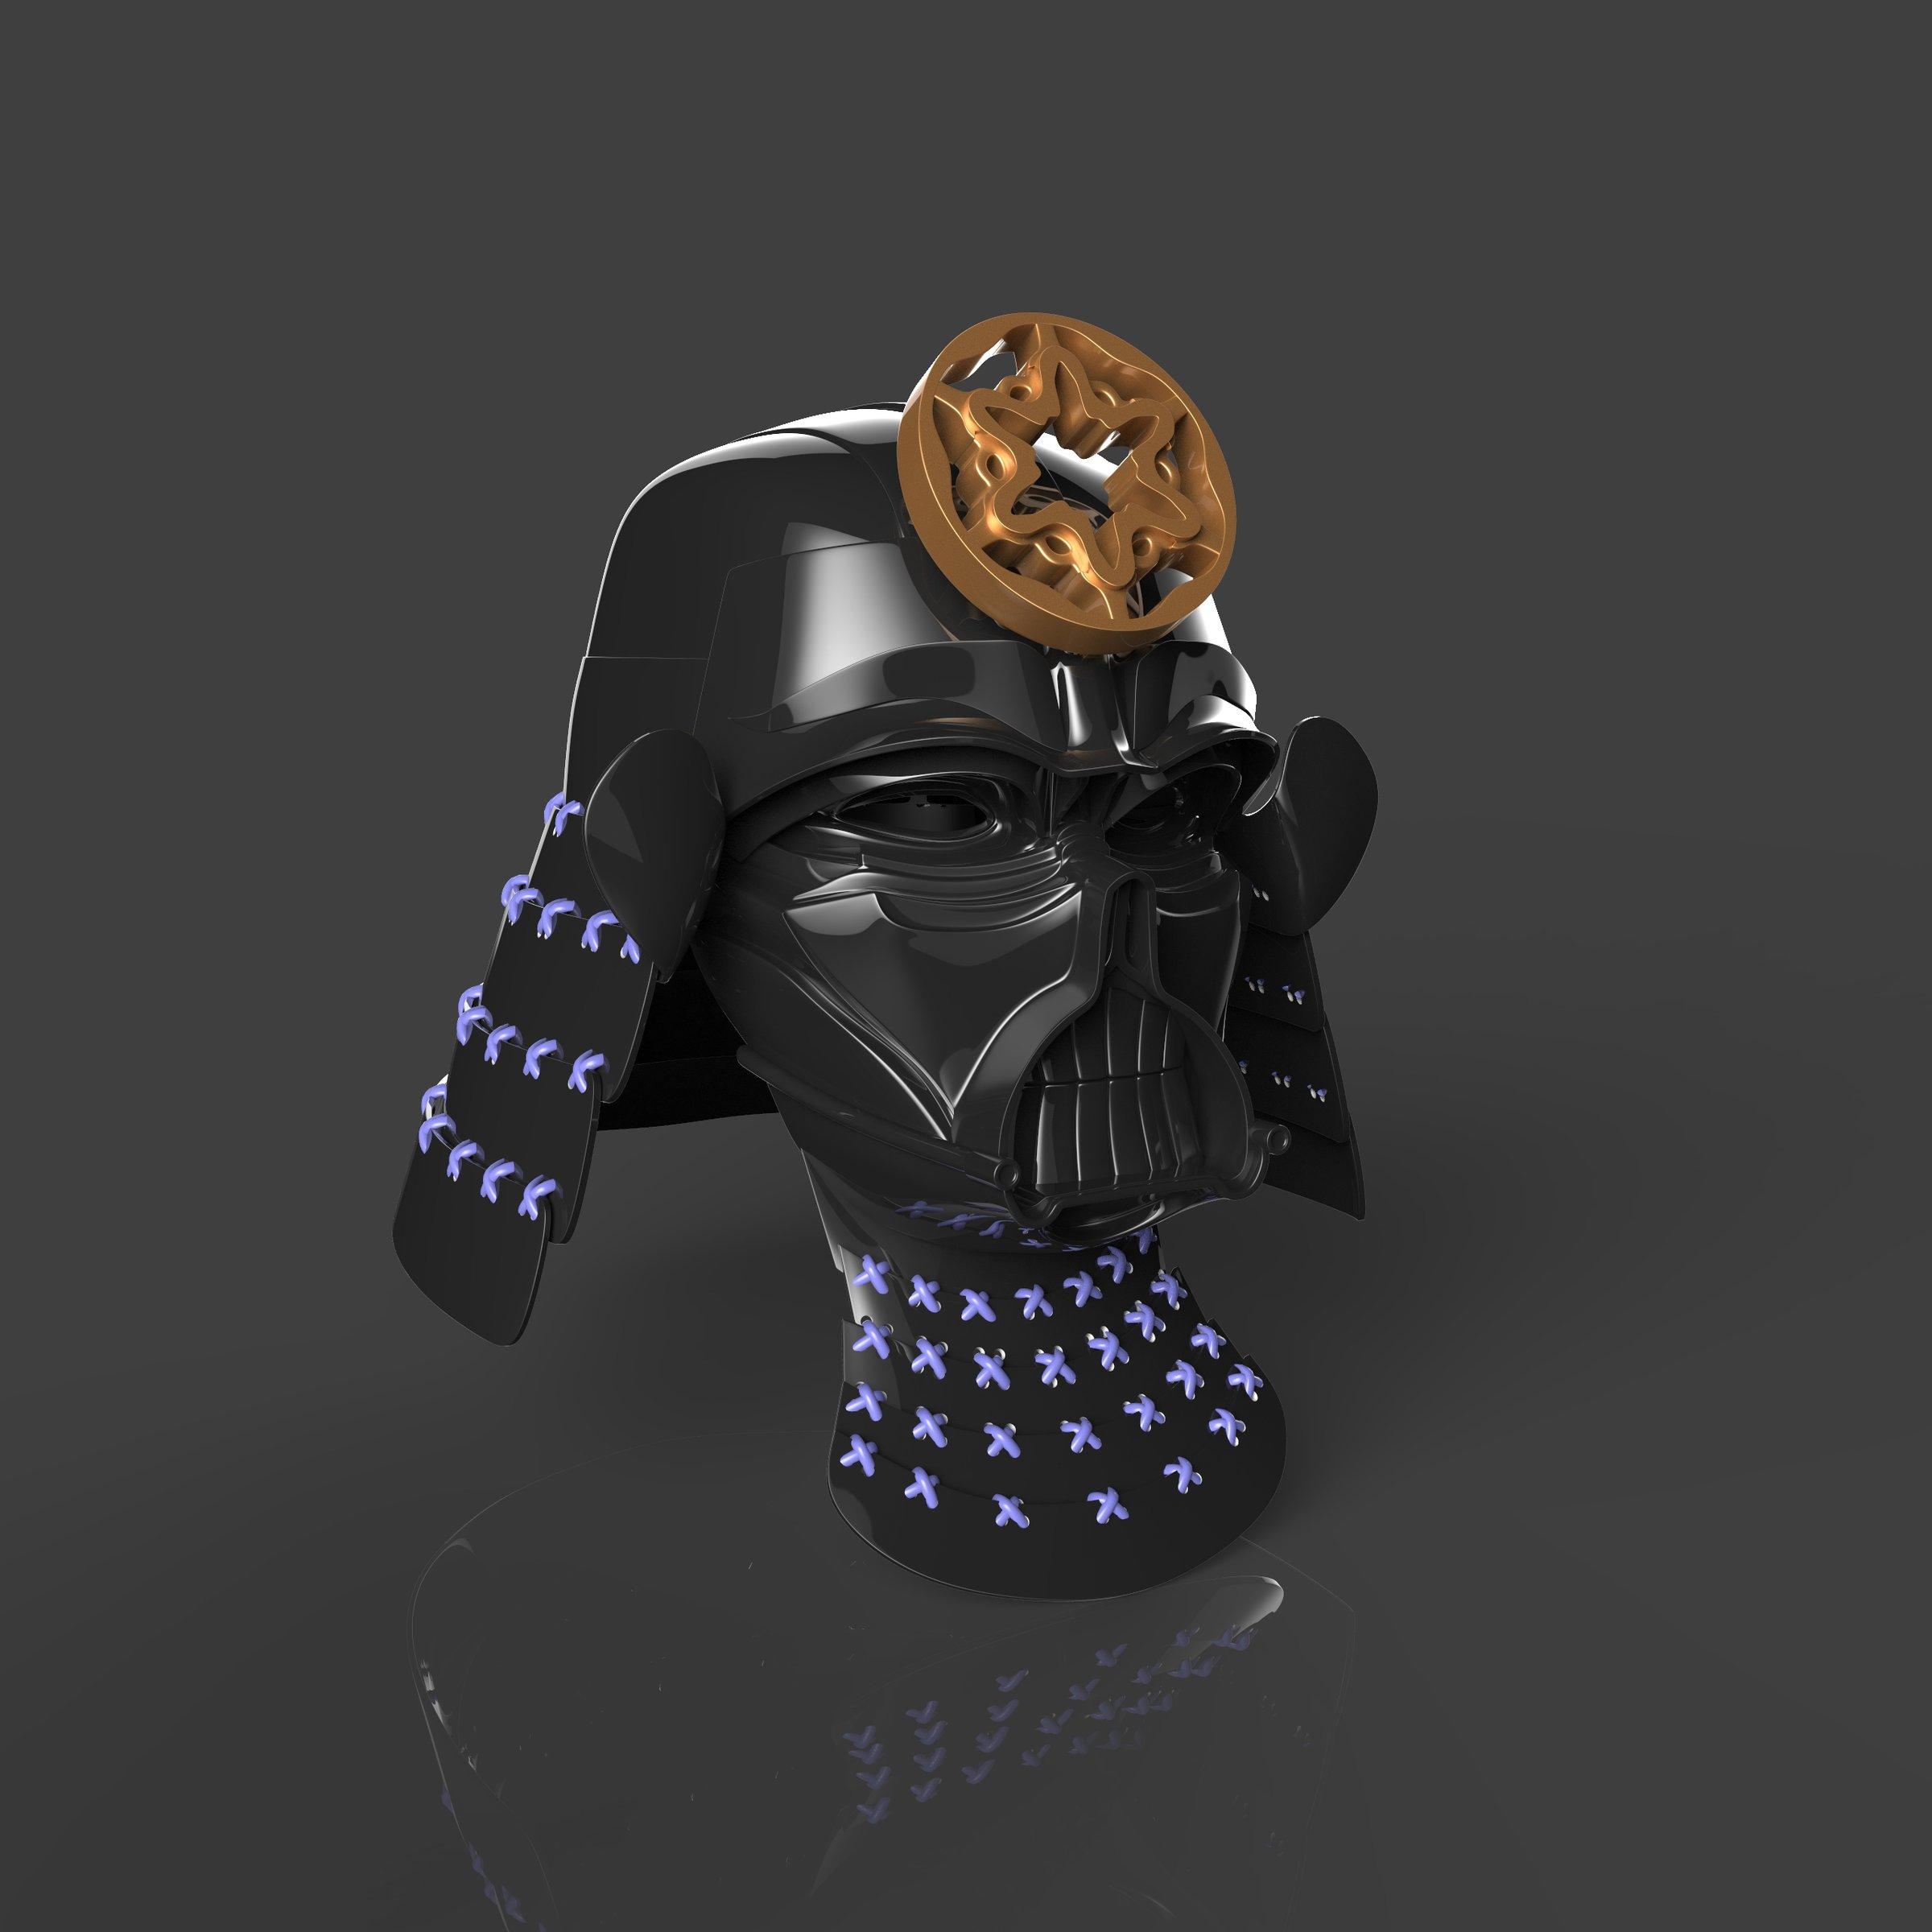 Darth Vader Samurai Cosplay Armor 3d model